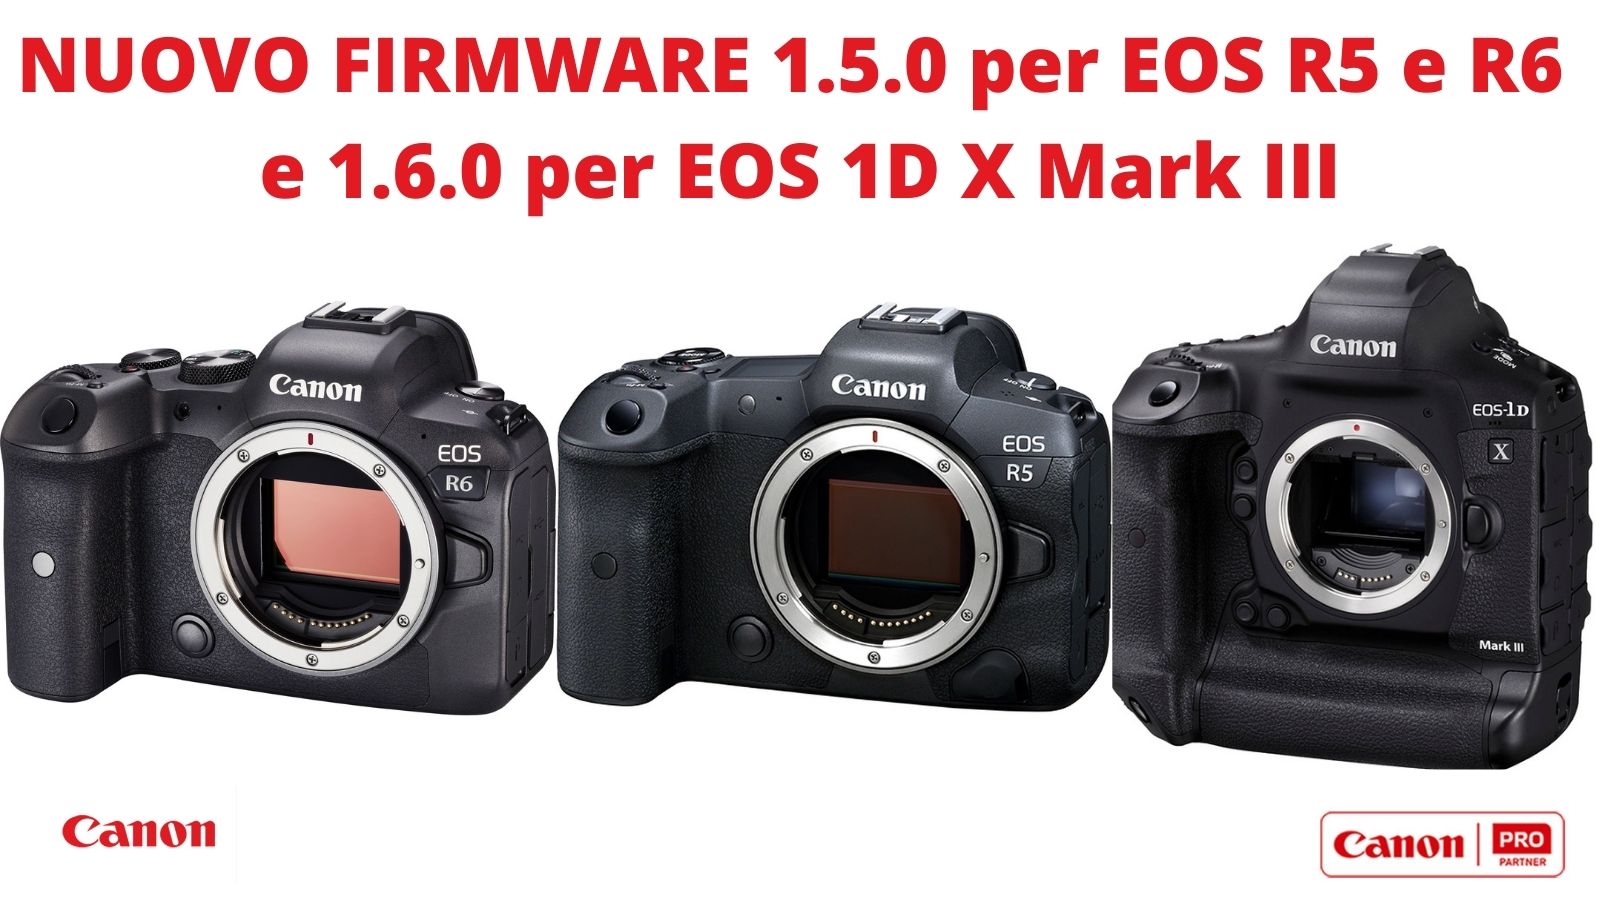 Nuovo Firmware per EOS R5, R6 e 1D X Mark III